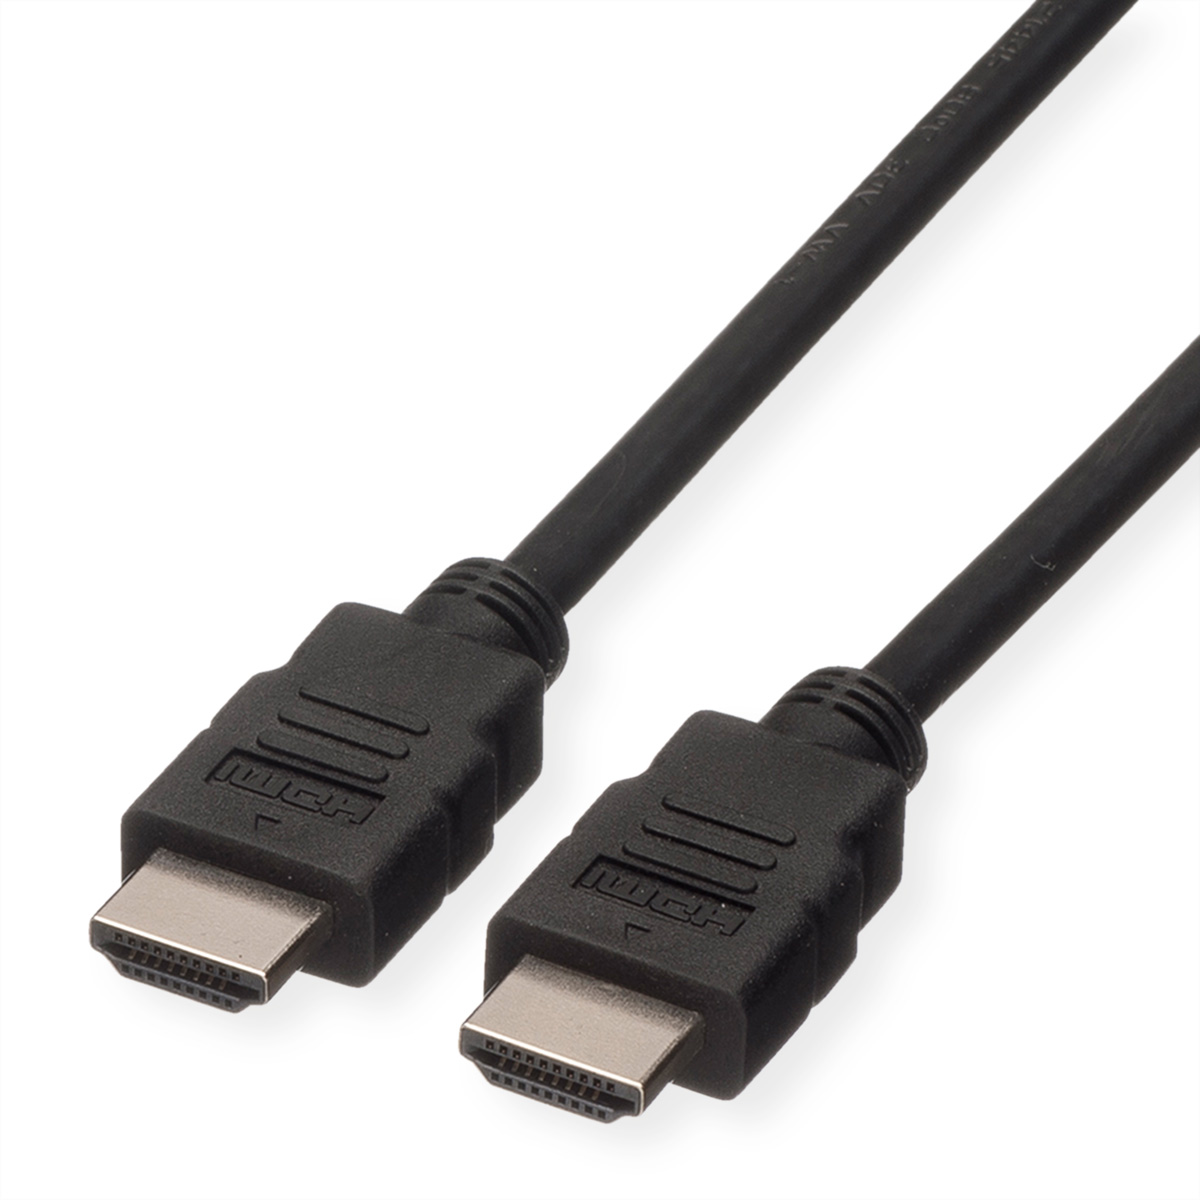 ROLINE HDMI High Speed Kabel mit Ethernet, LSOH, schwarz, 2 m